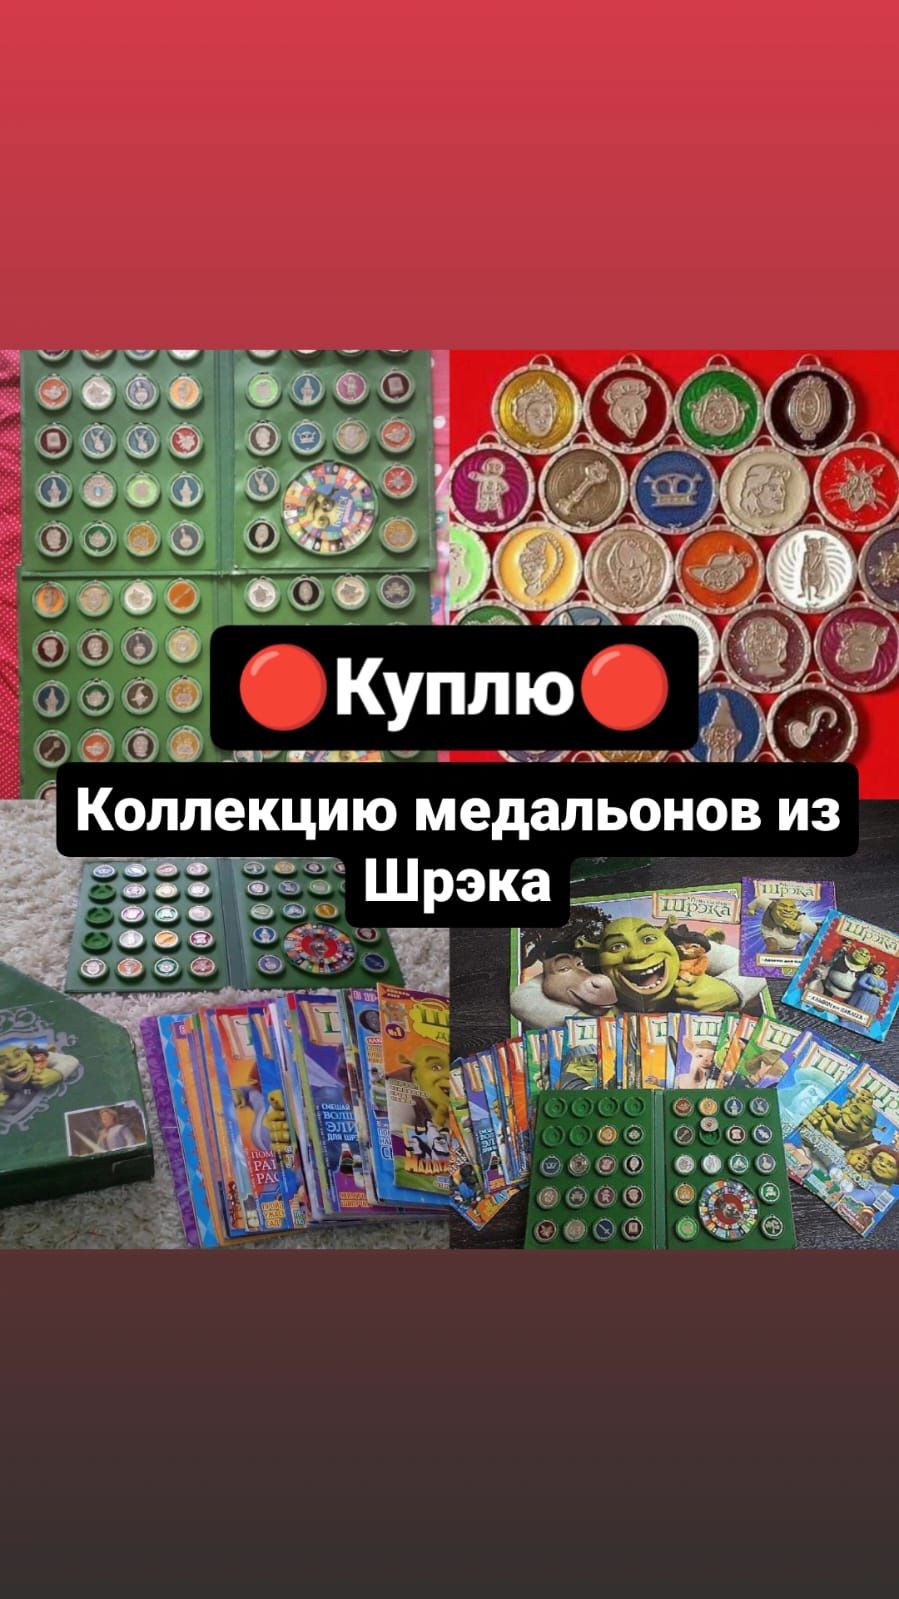 Коллекция игрушек журналов набор медальонов амулетов из Шрека и Скуби